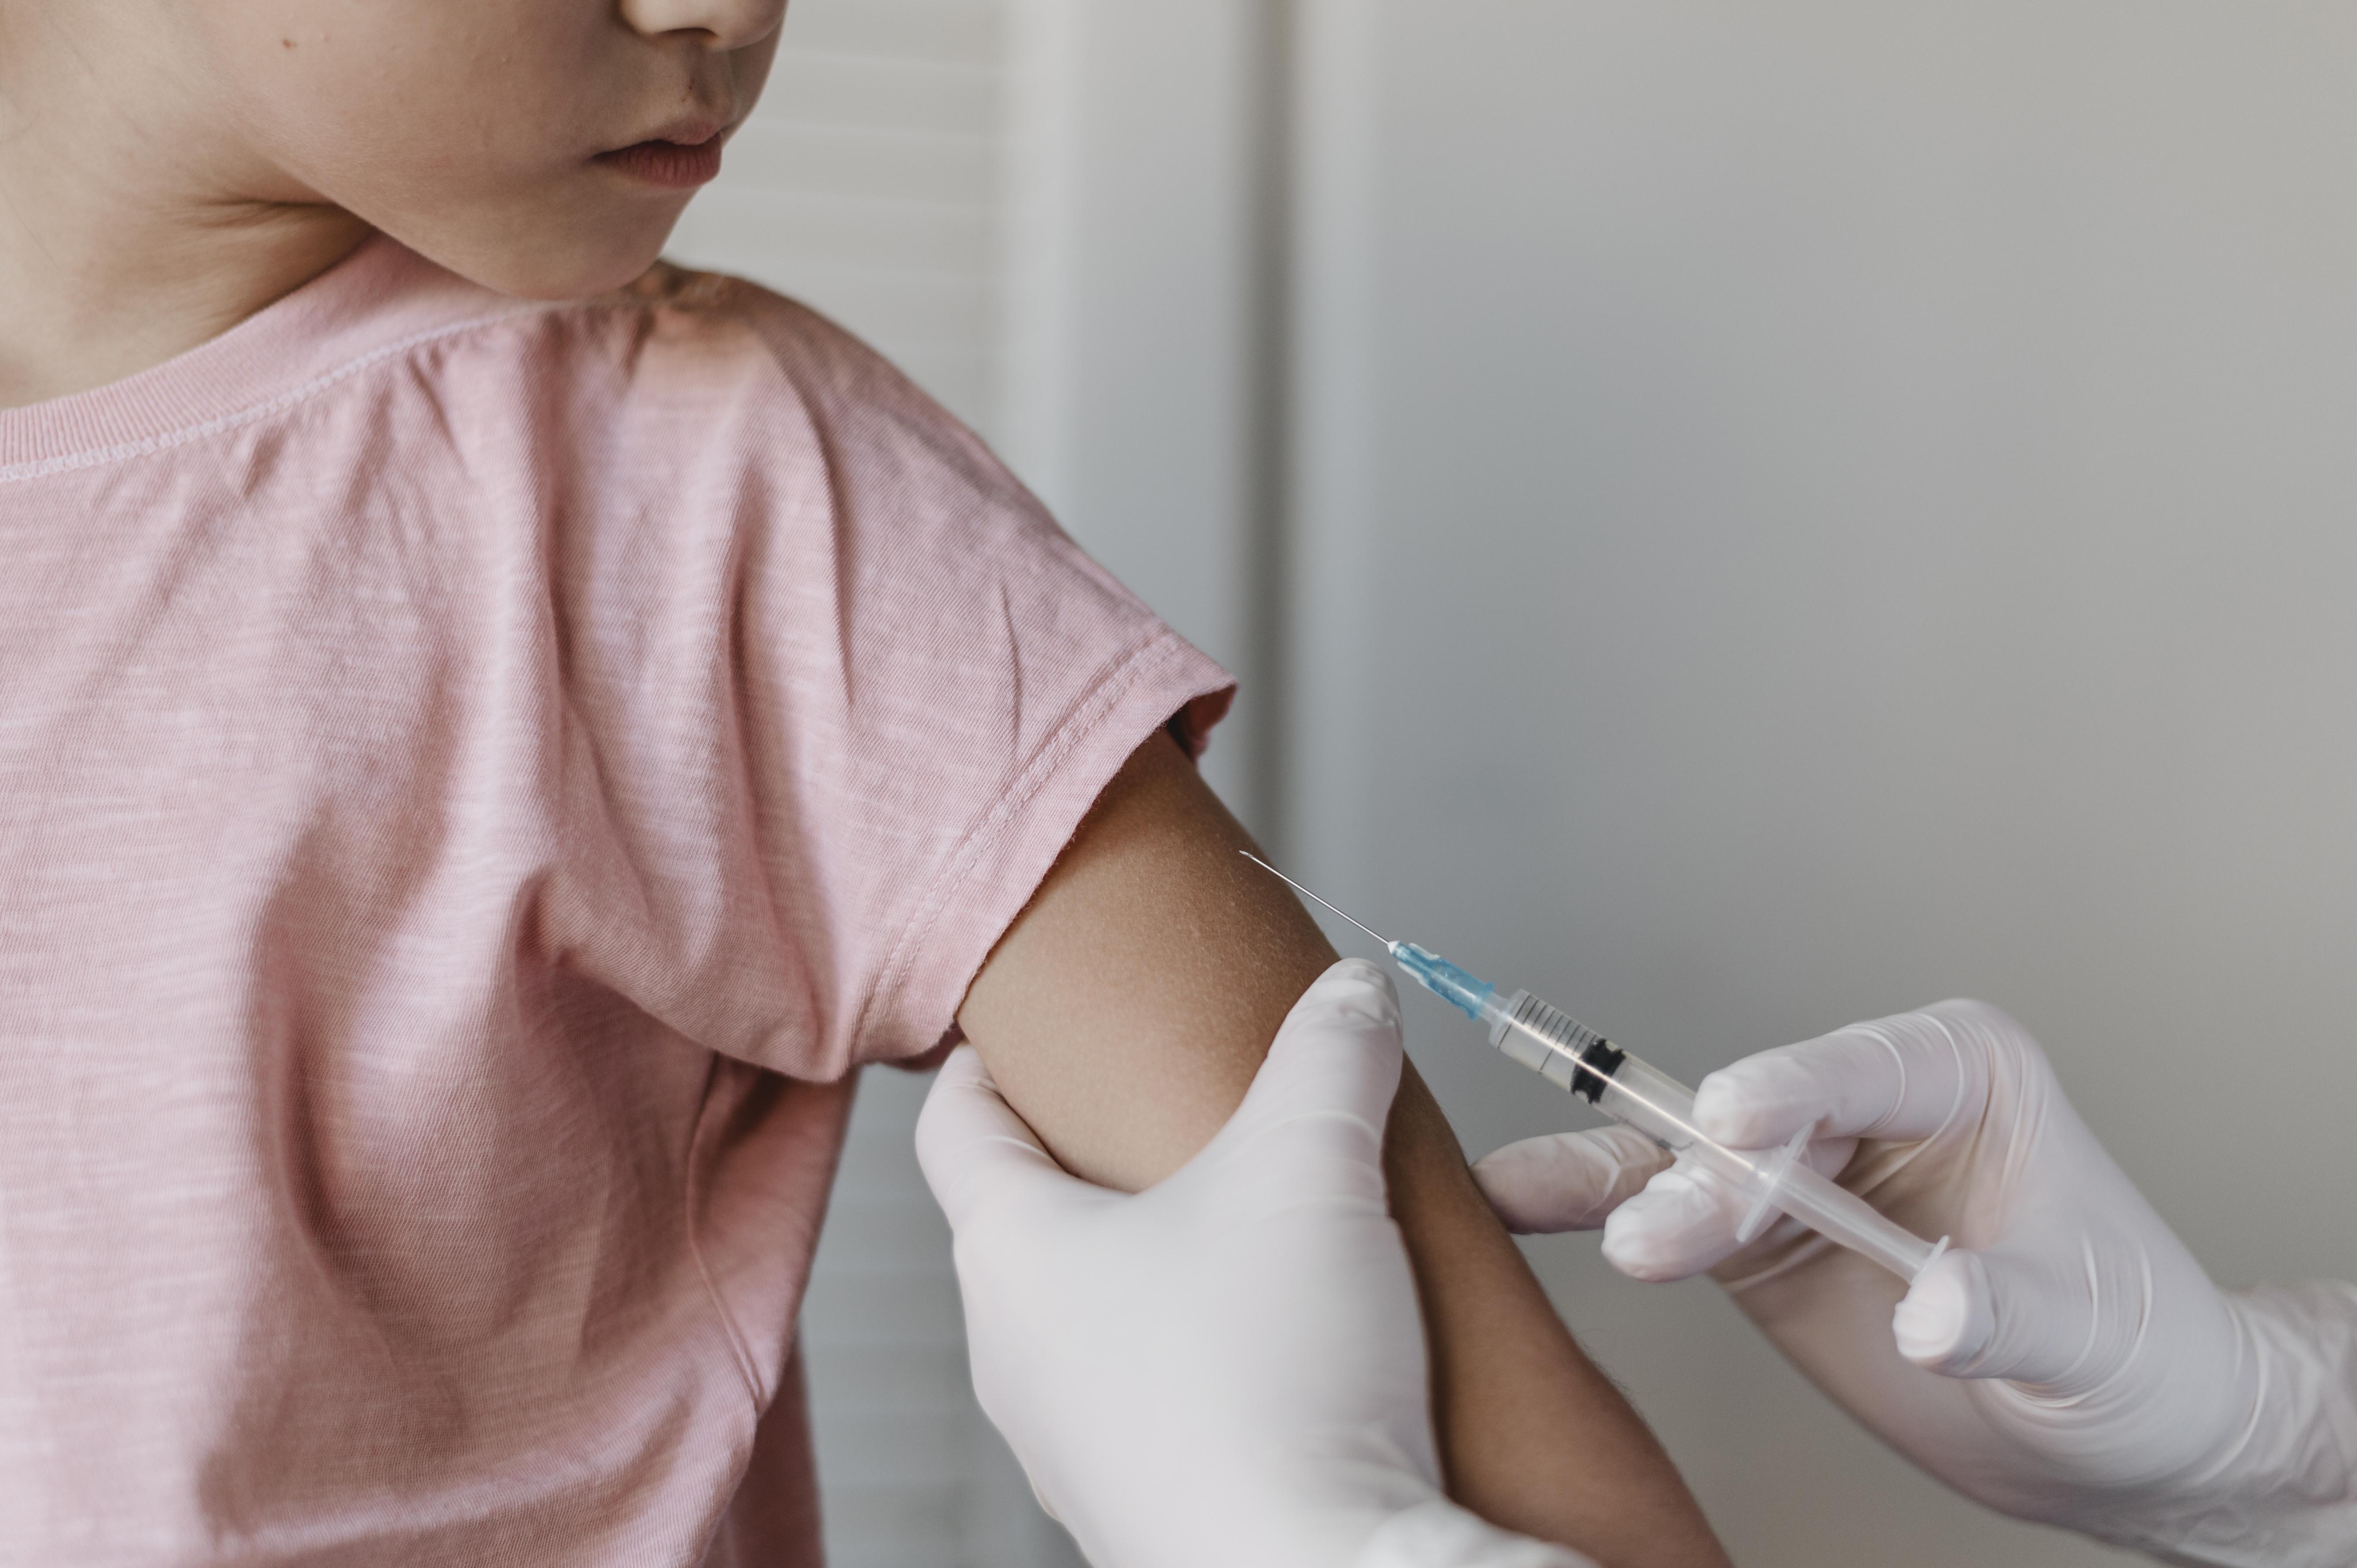 Percentual de crianças vacinadas vinha crescendo até a pandemia. A partir de 2020, índice de imunização despencou, aumentou o risco de retorno de doenças que podem deixar sequelas irreversíveis ou até levar à morte